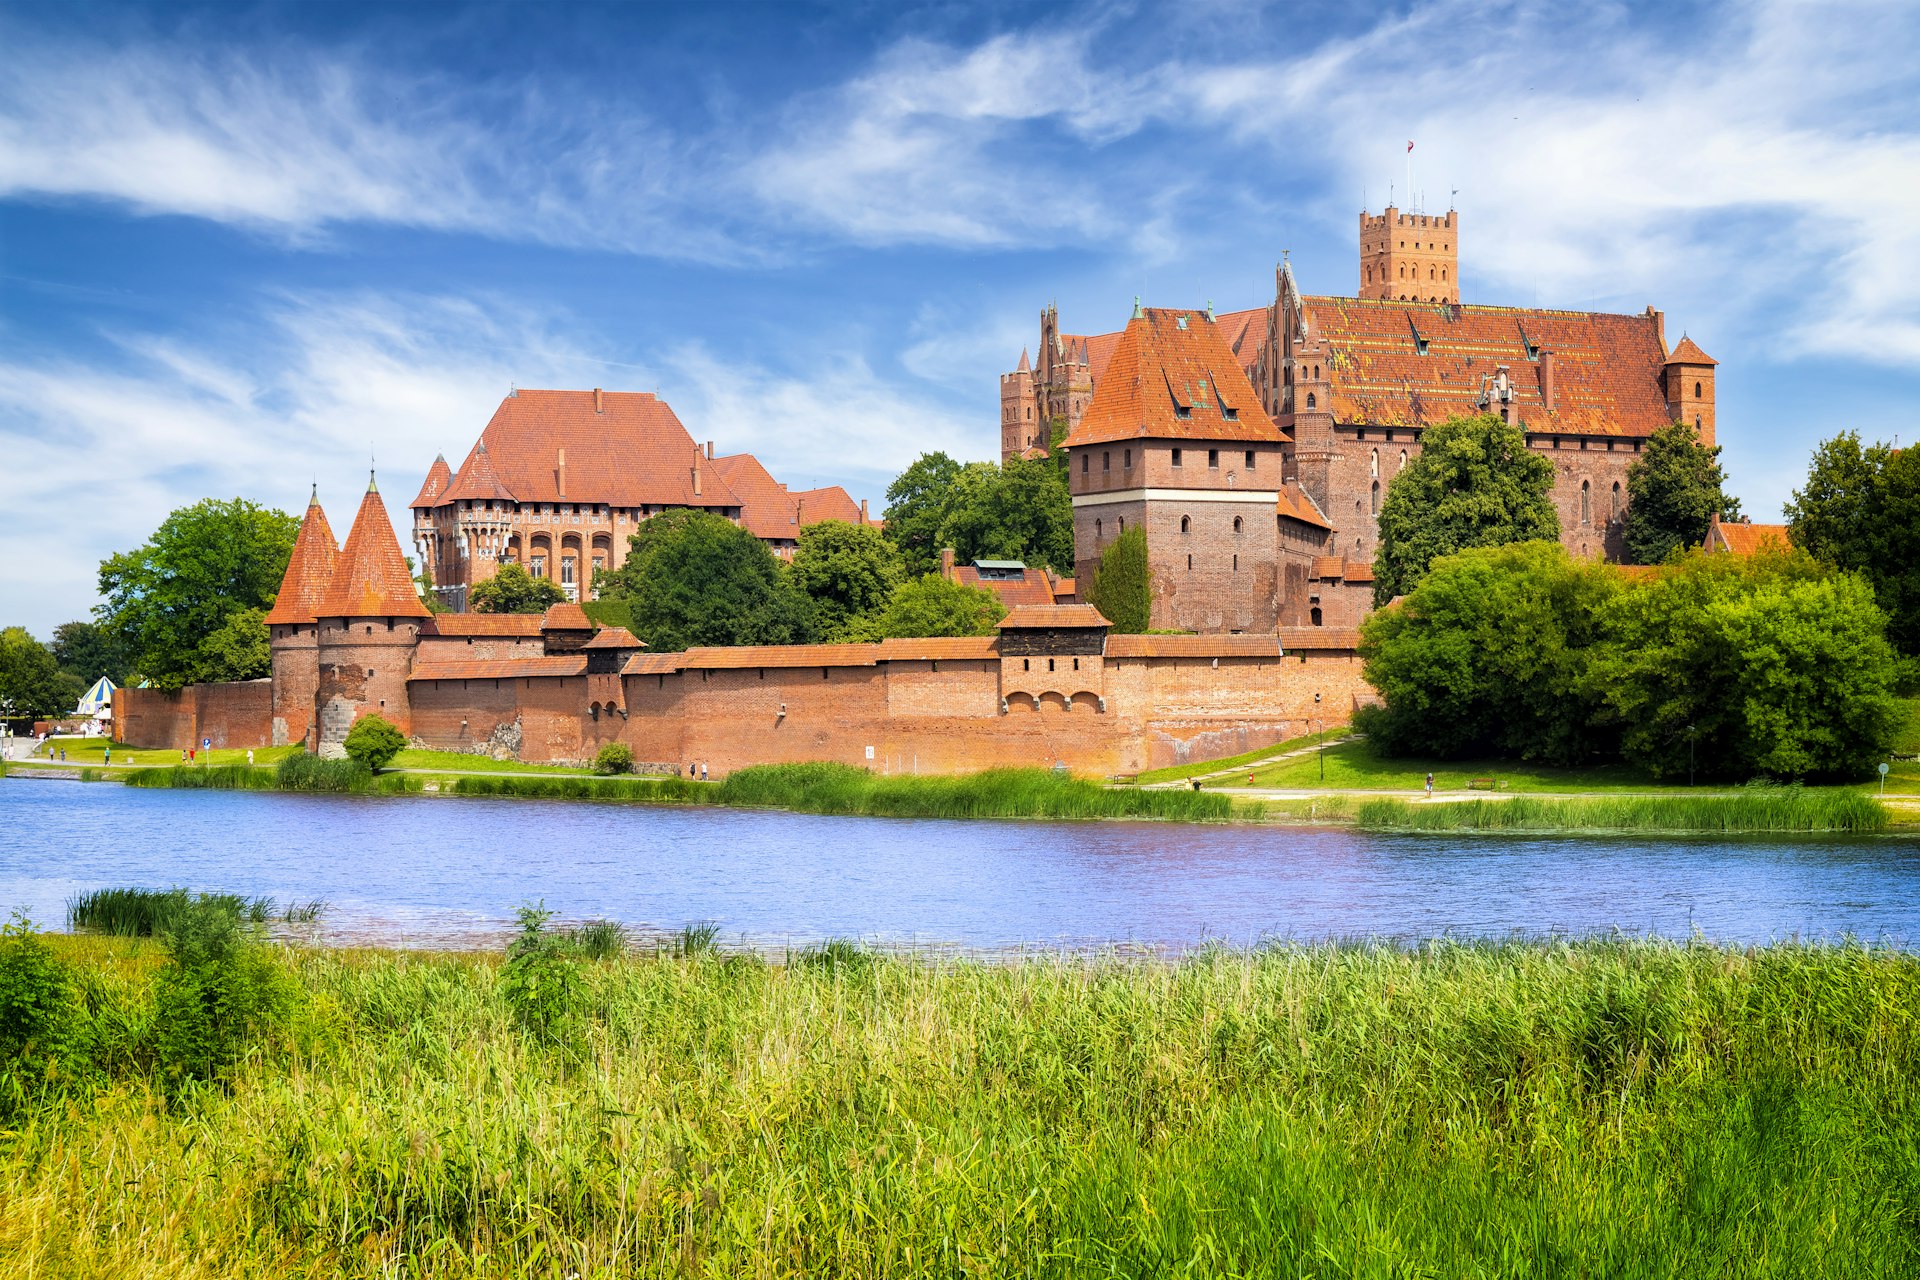 Um enorme castelo de tijolos vermelhos com muitas torres e ameias fica às margens de um rio calmo.